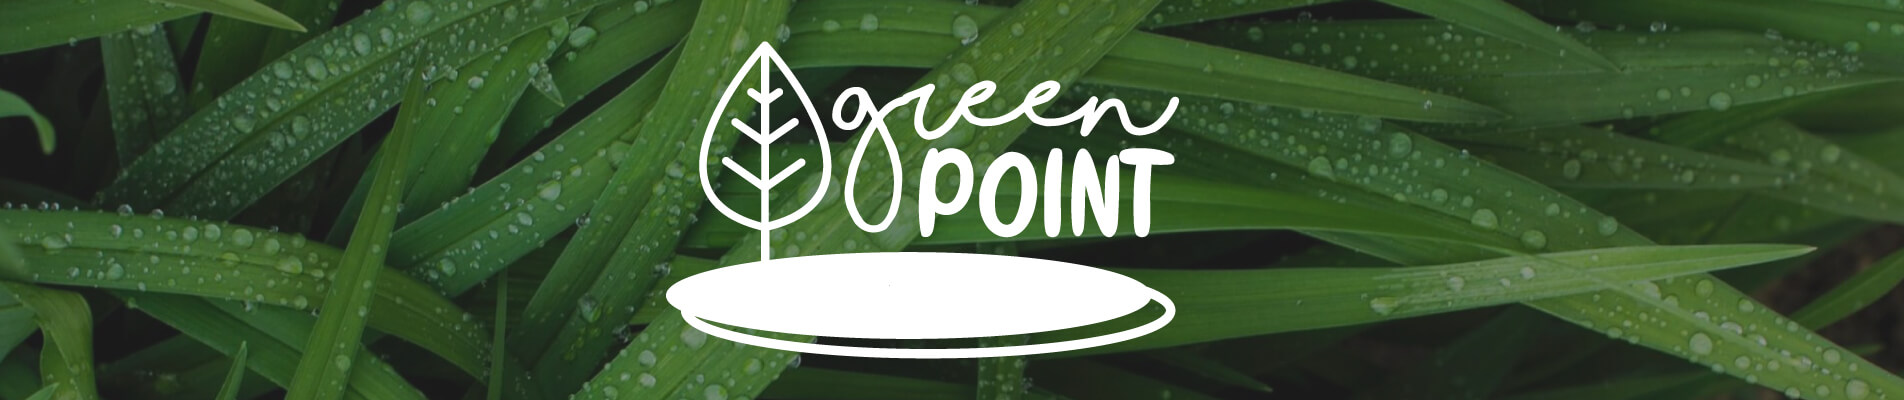 Tecno lancia green point: la newsletter dedicata alla sostenibilità ambientale